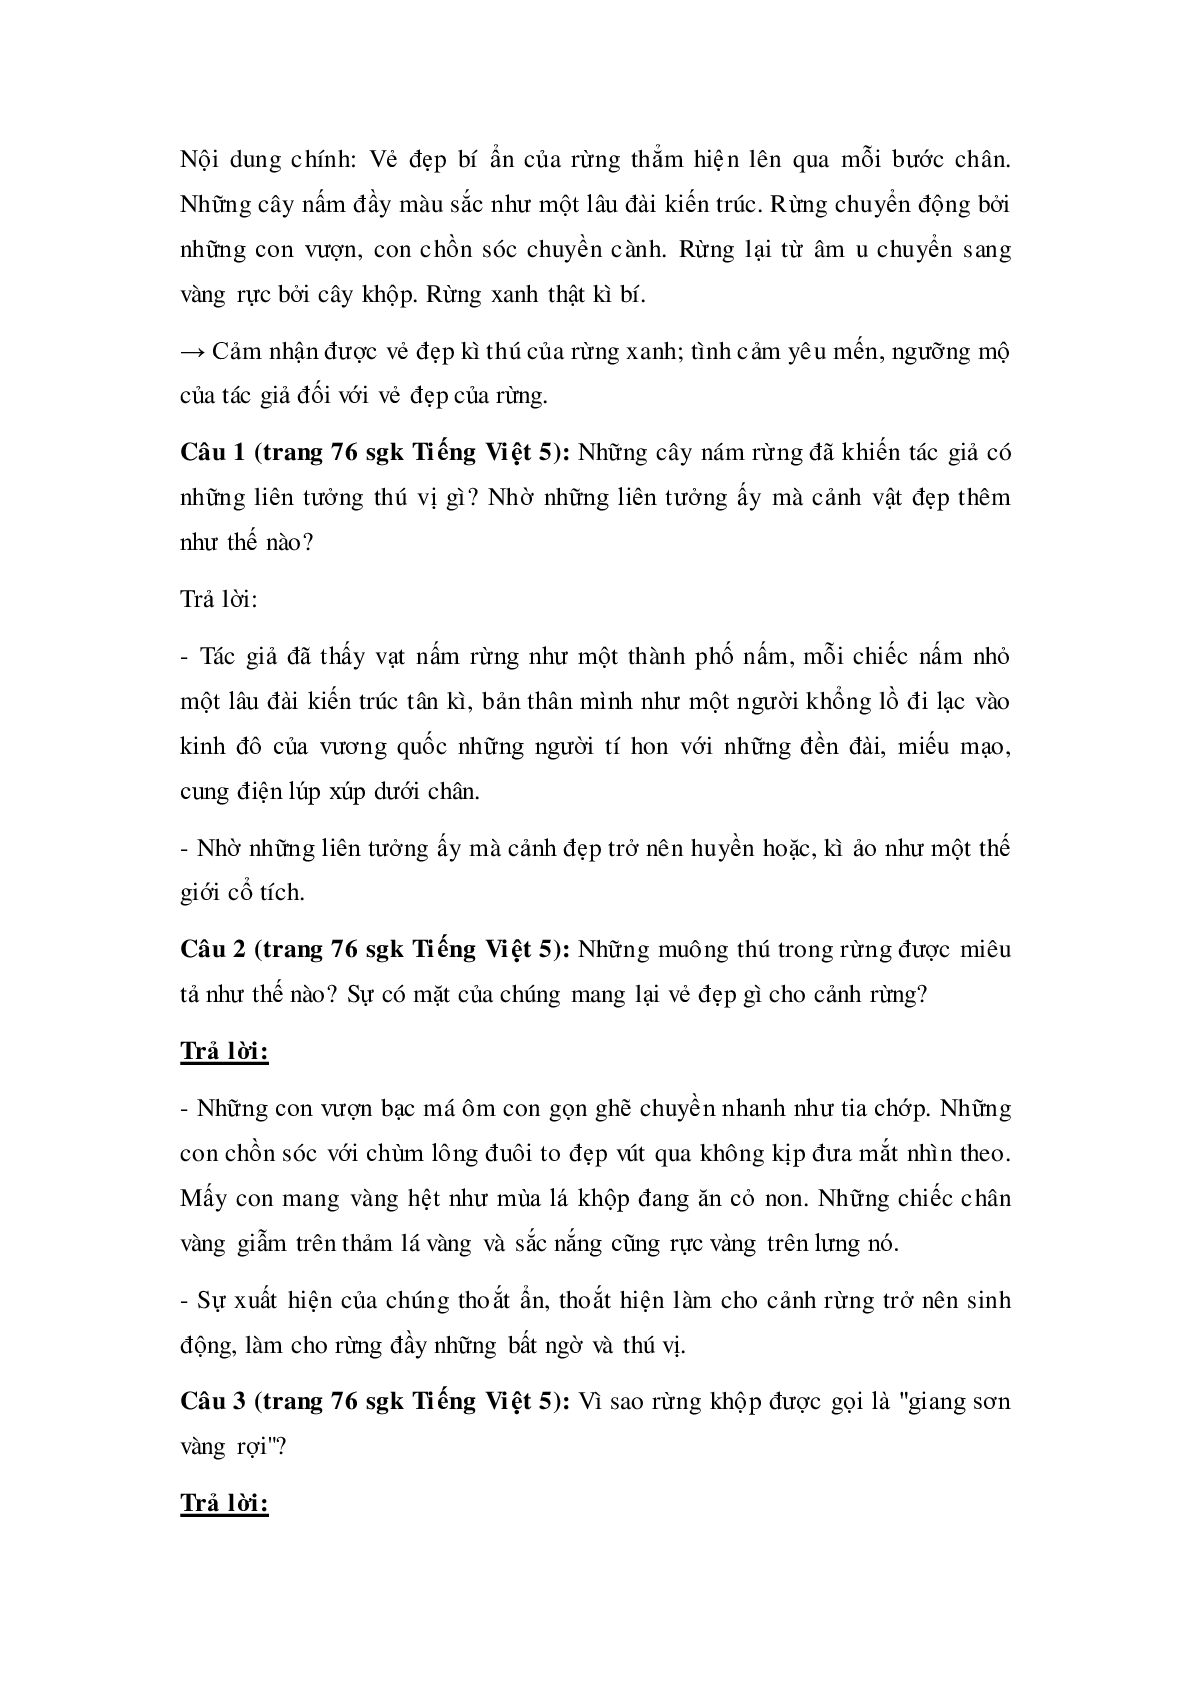 Soạn Tiếng Việt lớp 5: Tập đọc: Kì diệu rừng xanh mới nhất (trang 2)